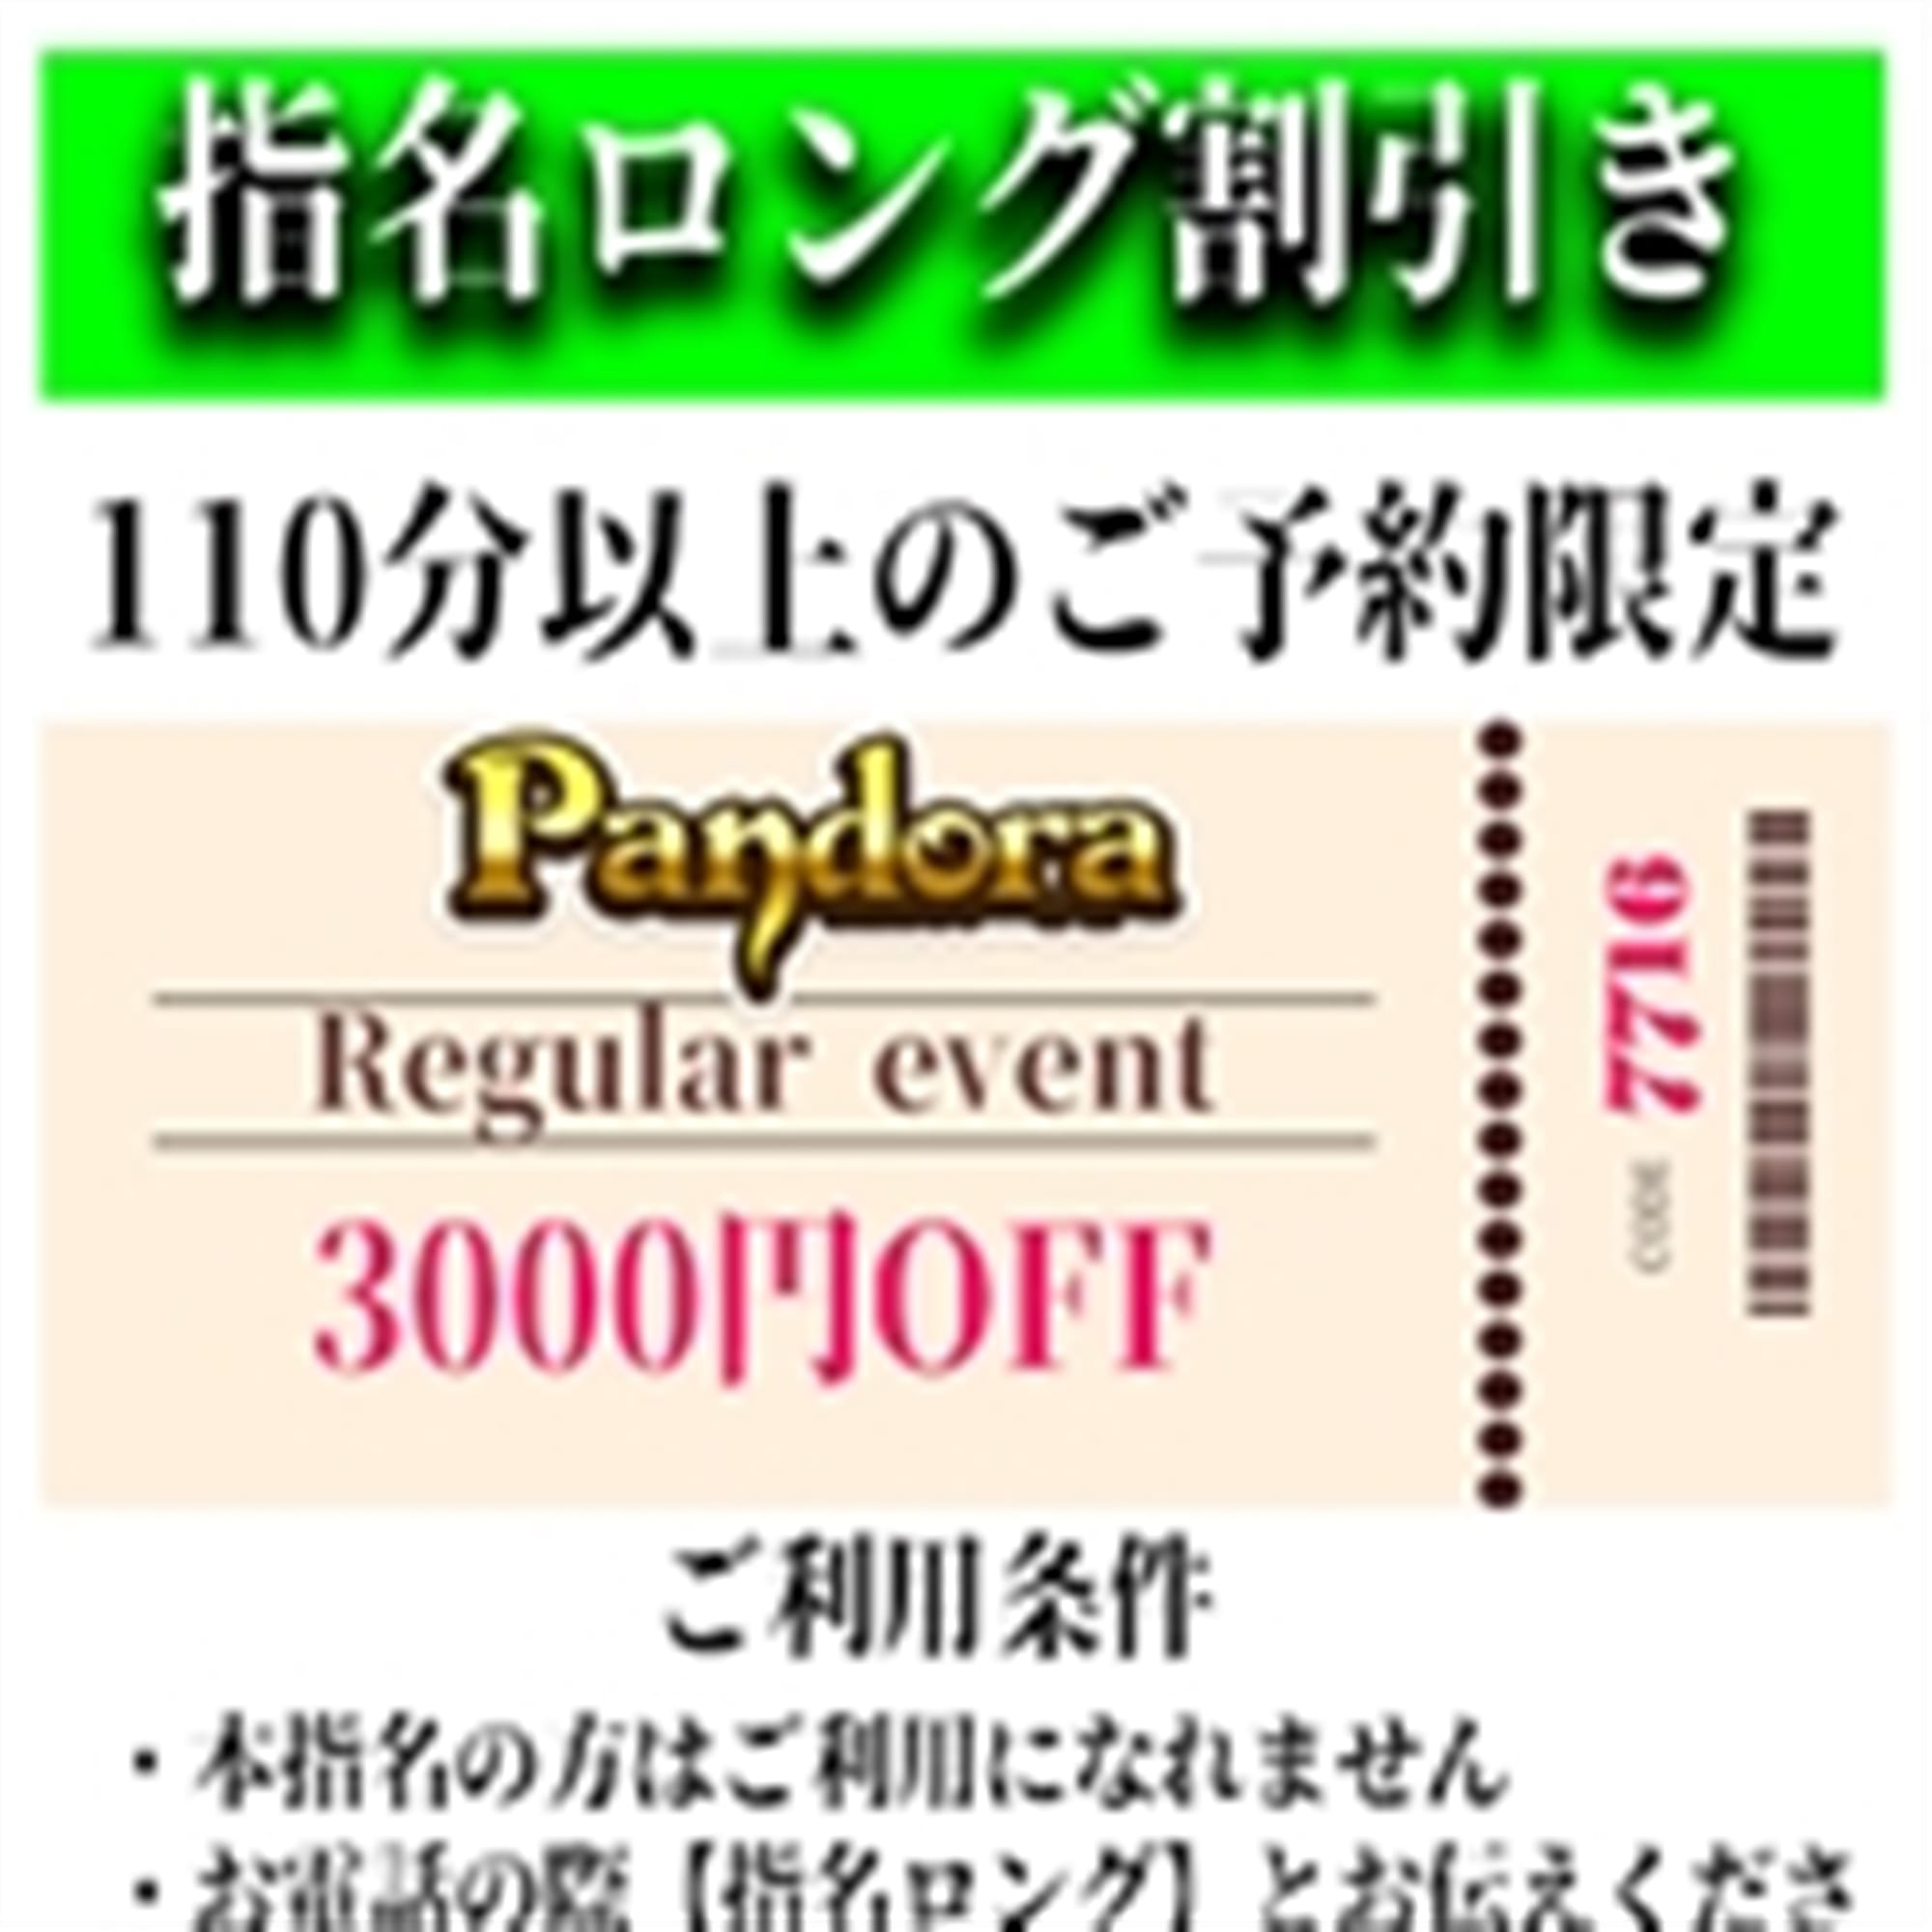 「ご指名のお客様も遊べるロングコース割引」04/24(水) 05:55 | Pandora(パンドラ)新潟のお得なニュース